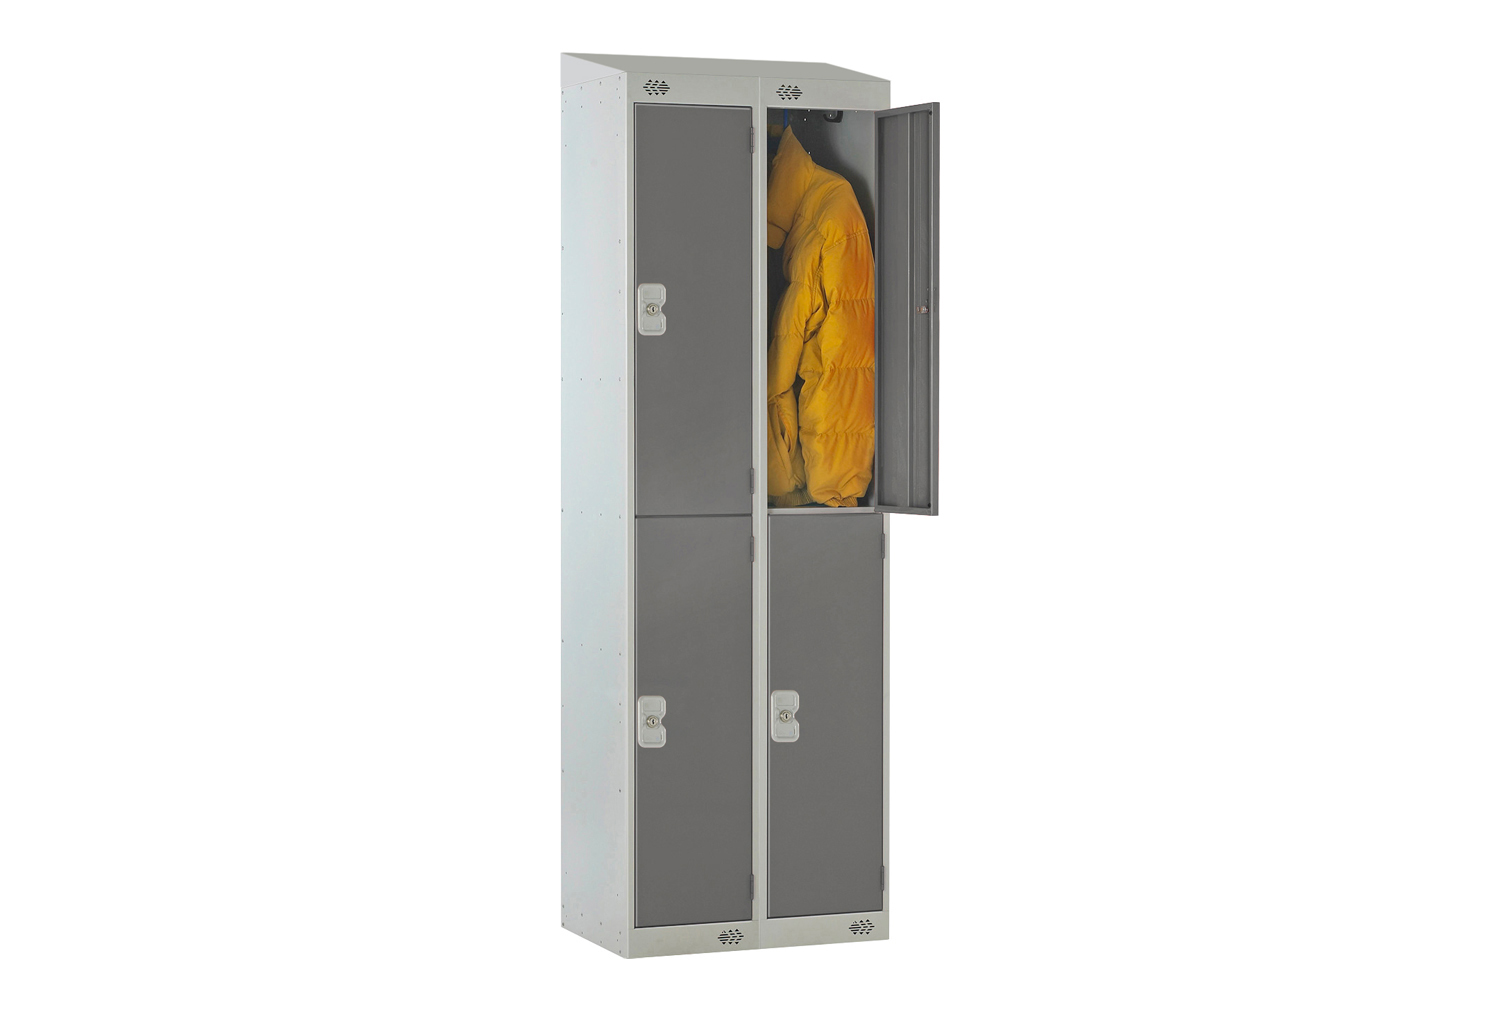 Deluxe 2 Door Locker Nest of 2 With Sloping Top, 60wx45dx193/180h (cm), Combination Lock, Dark Grey